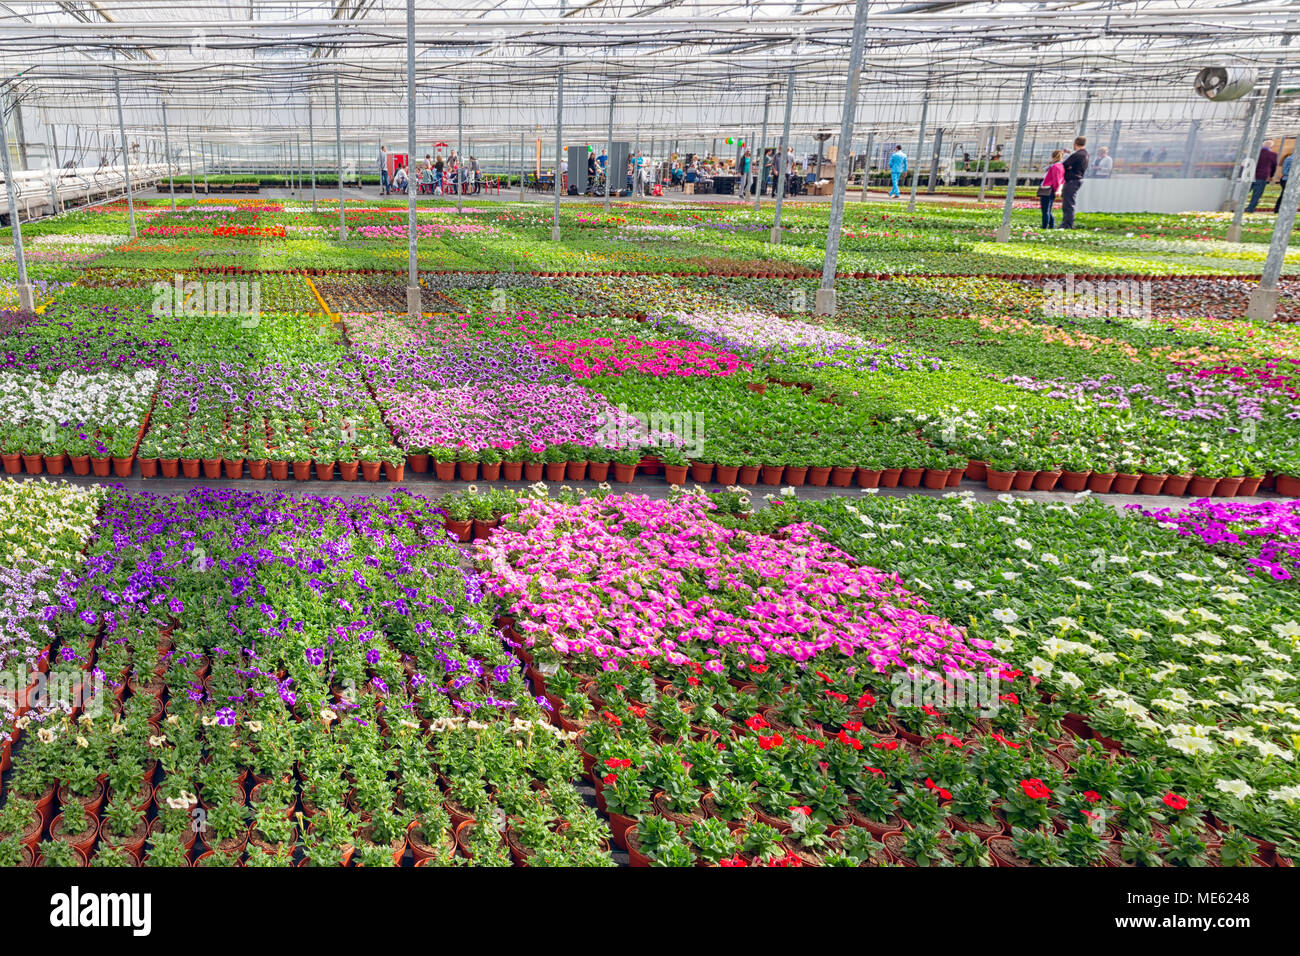 Los visitantes en invernadero para el cultivo de plantas ornamentales Foto de stock